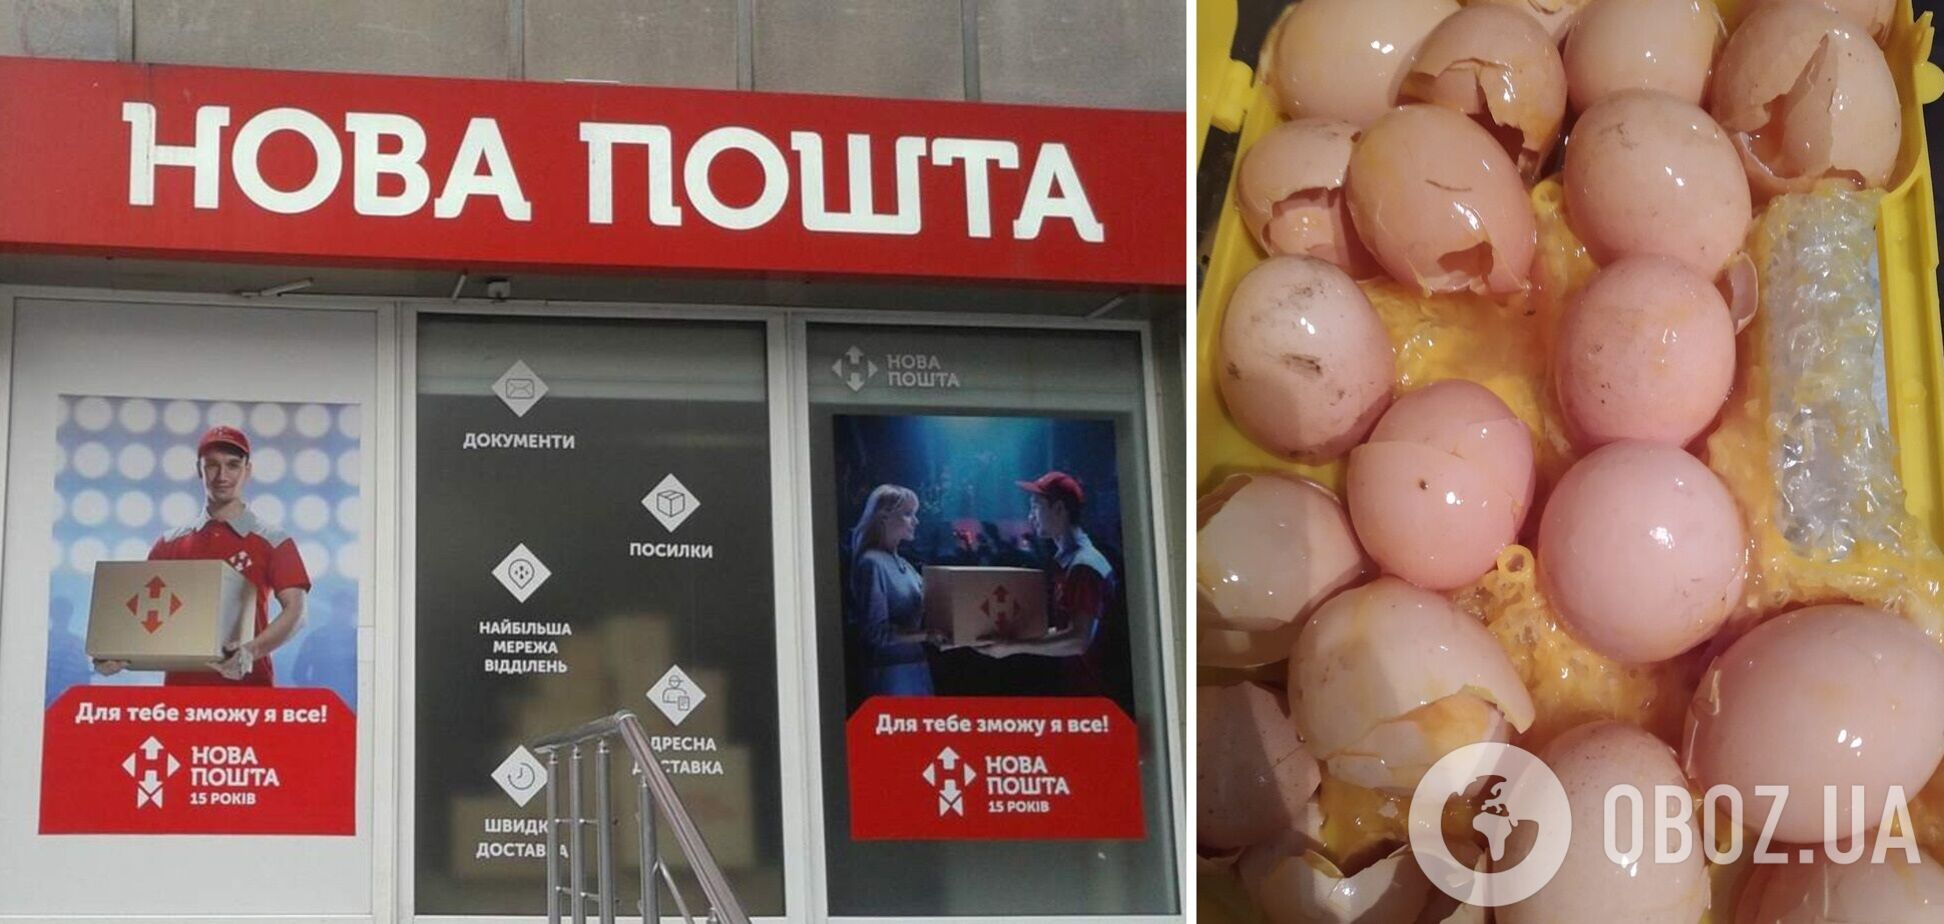 Сотрудники 'Новой почты' разбили перевозимую посылку – 20 яиц и банку меда